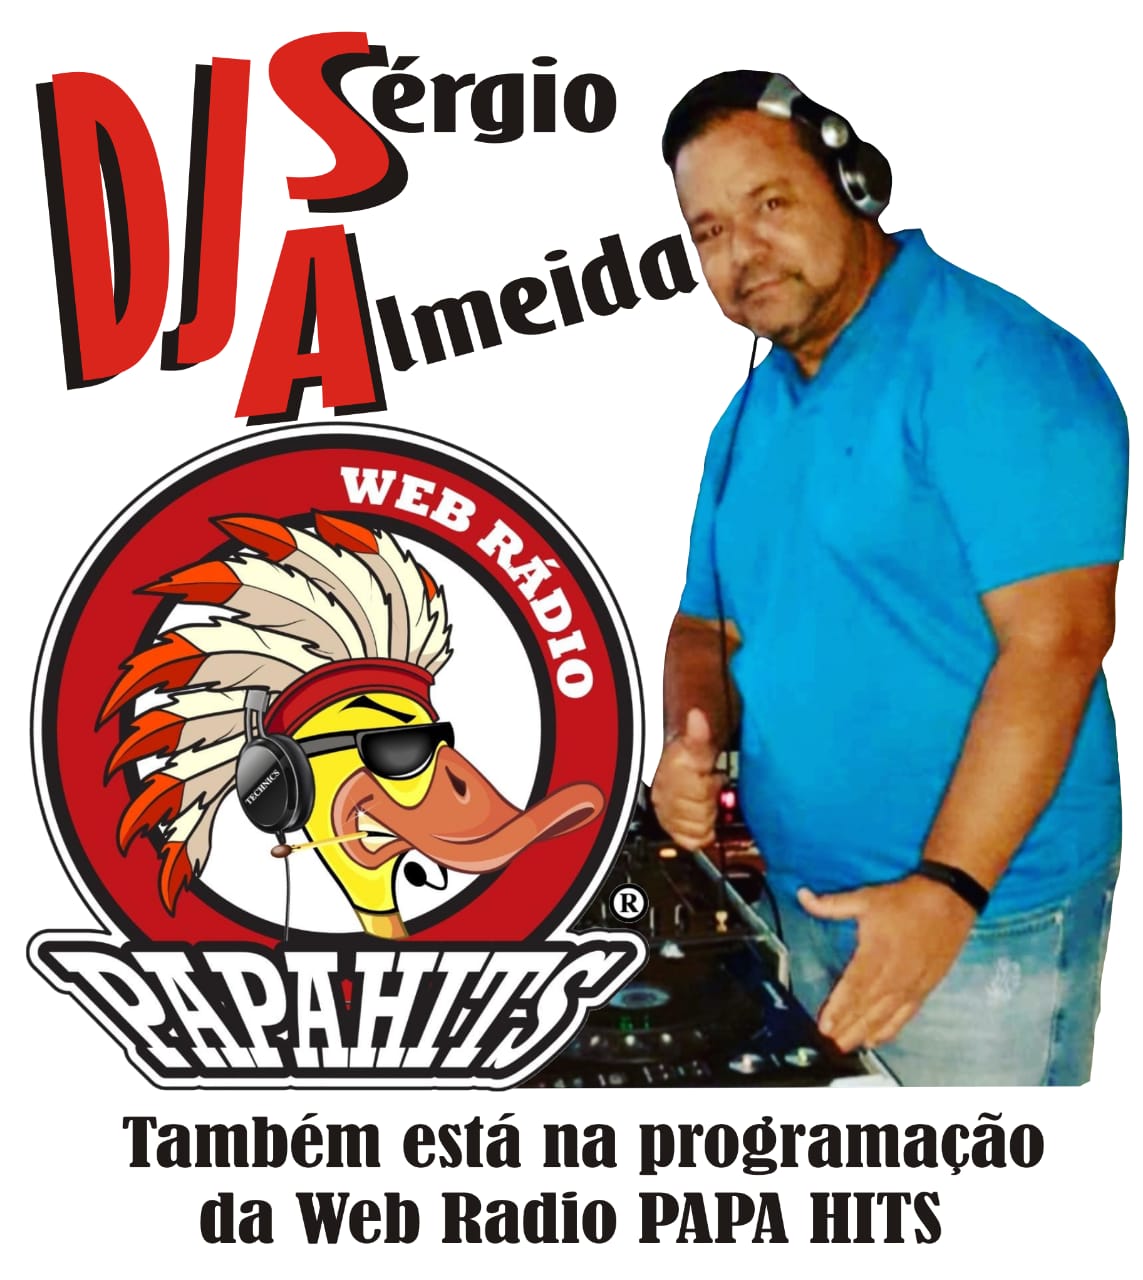 DJ SERGIO ALMEIDA